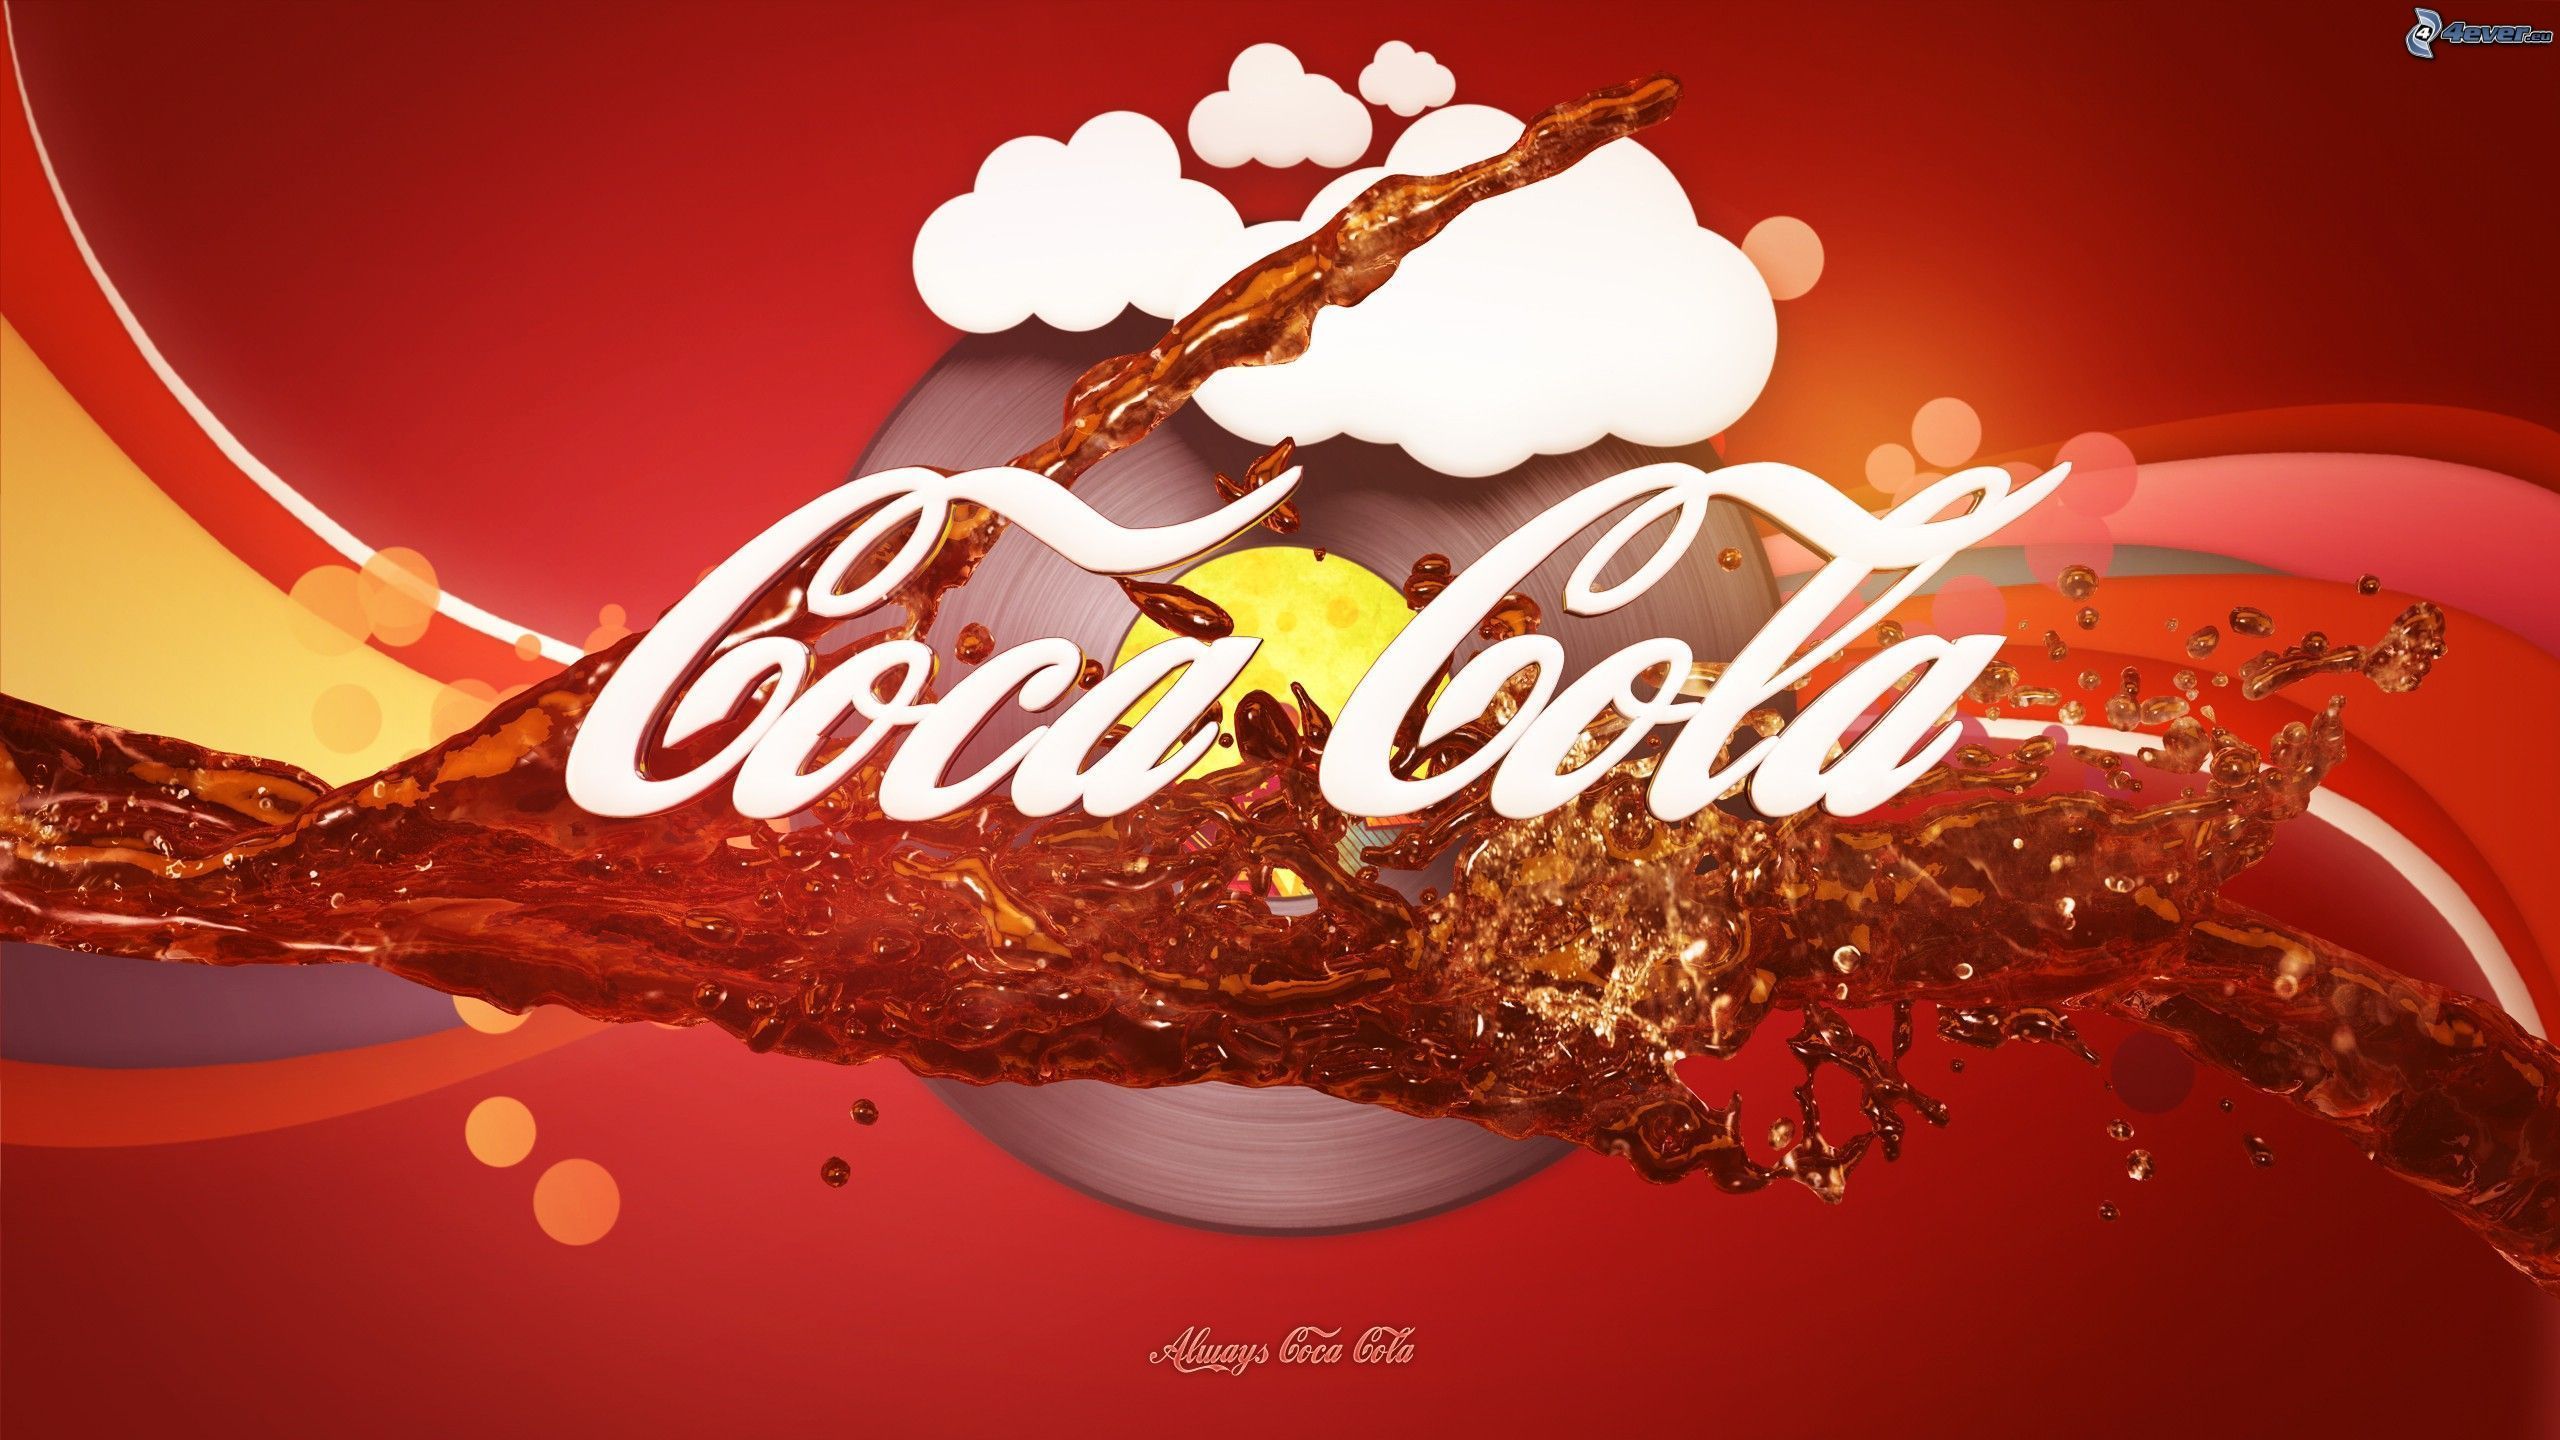 Coca Cola wallpaper | 2560x1440 | #44350